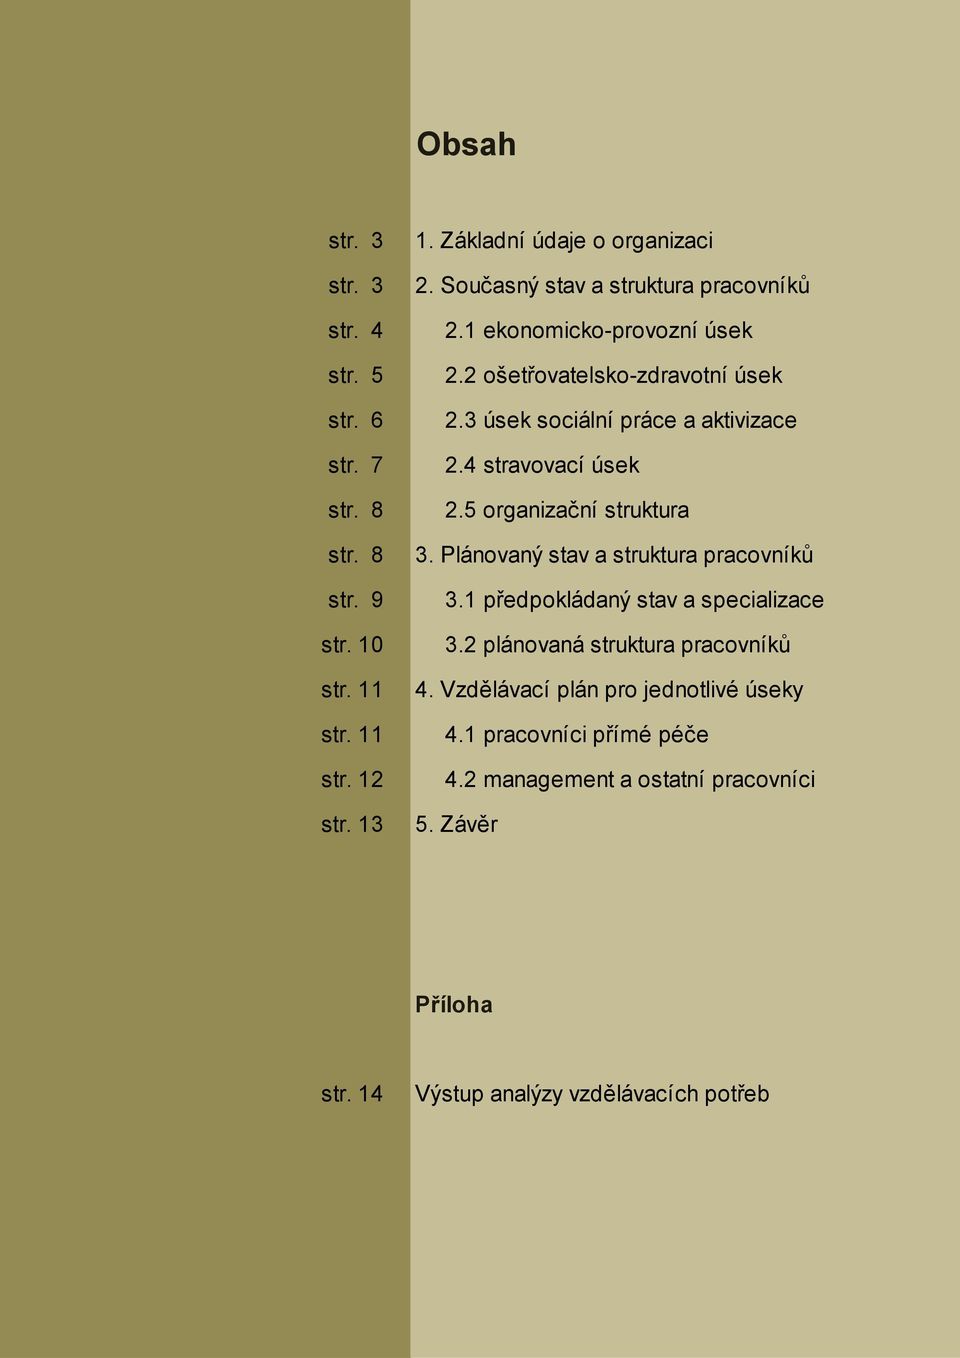 Plánovaný stav a struktura pracovníků str. 9 3.1 předpokládaný stav a specializace str. 10 3.2 plánovaná struktura pracovníků str. 11 4.